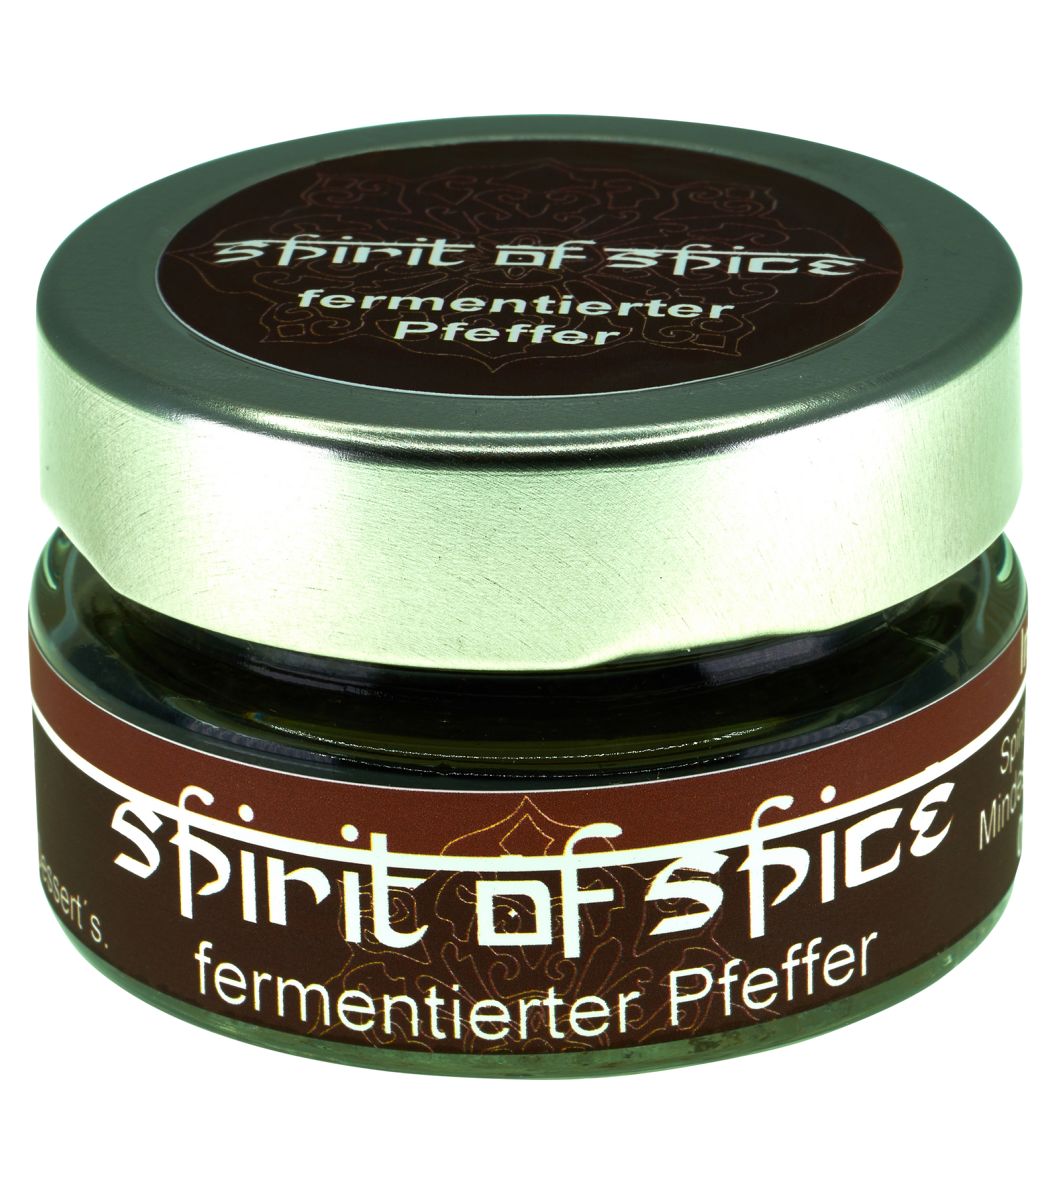 Spirit of Spice fermentierter Pfeffer